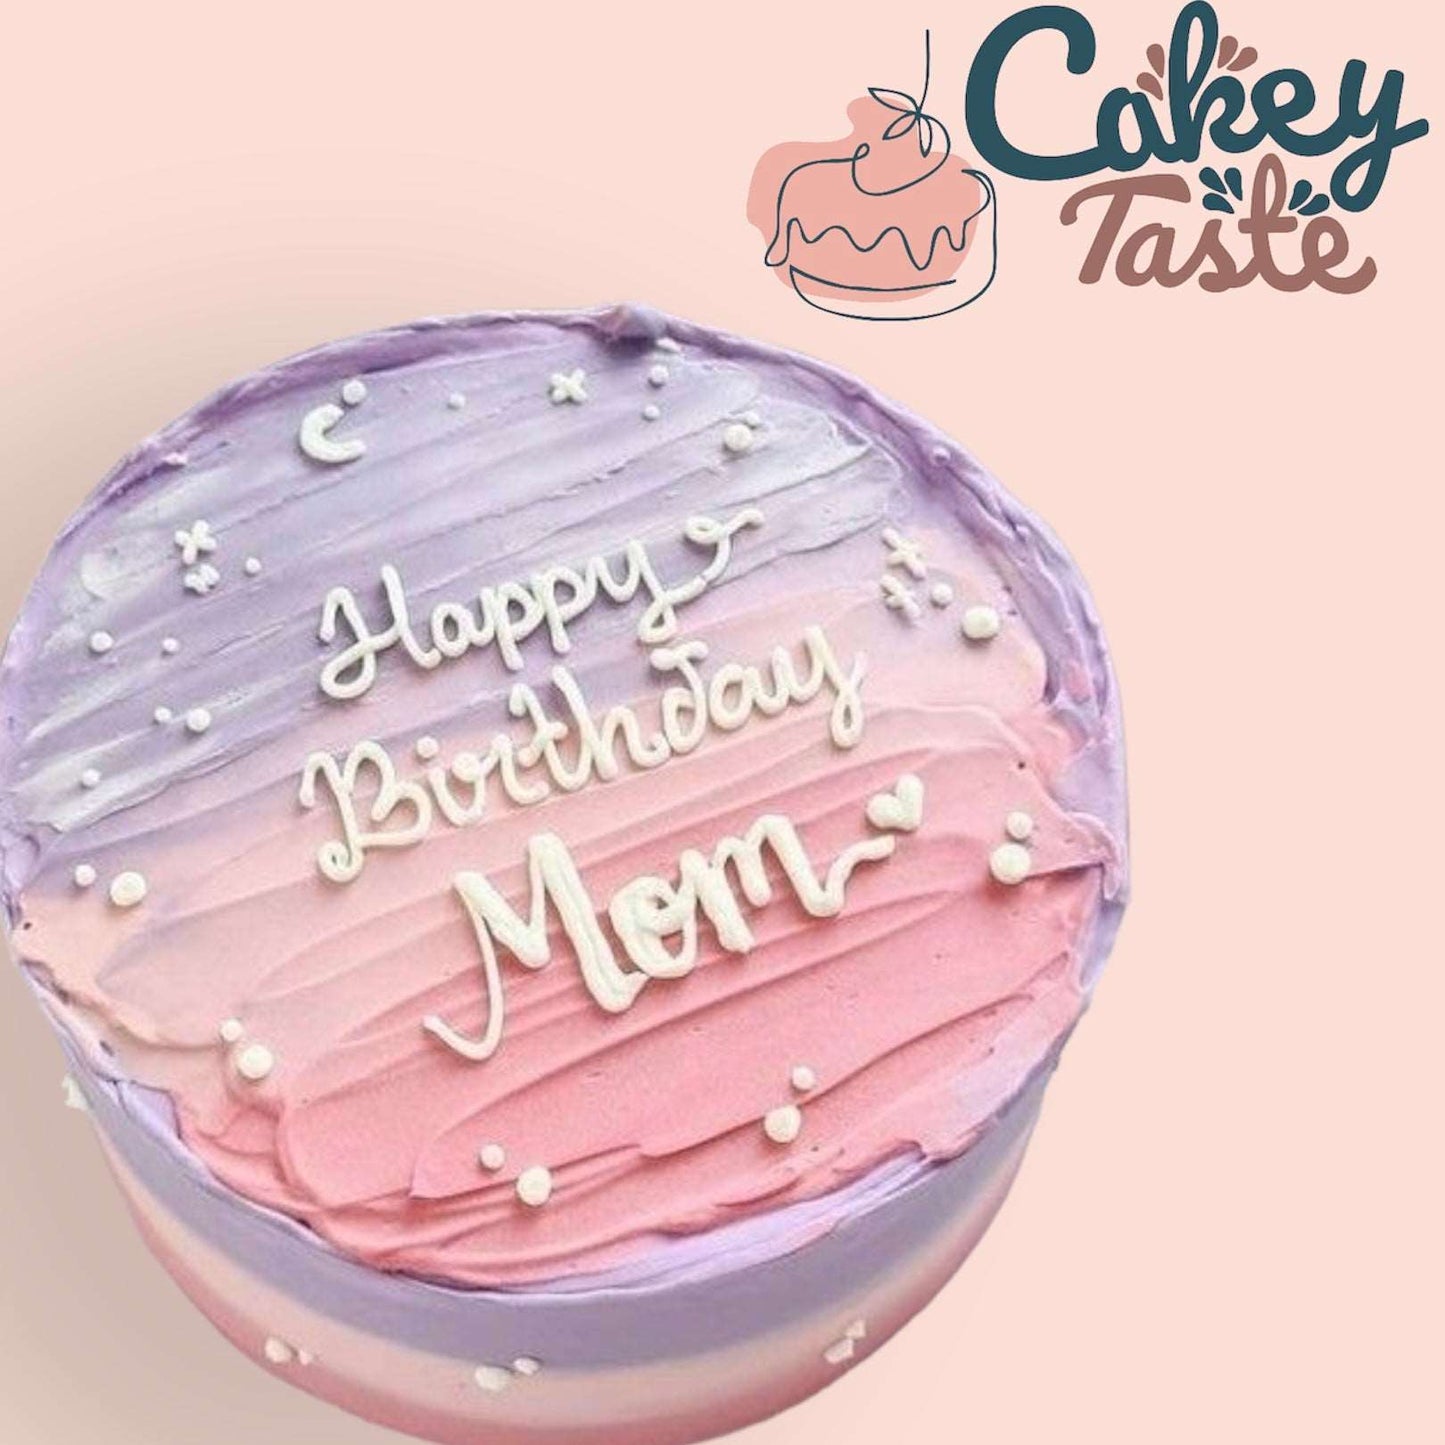 Happy Birthday Mom Cake